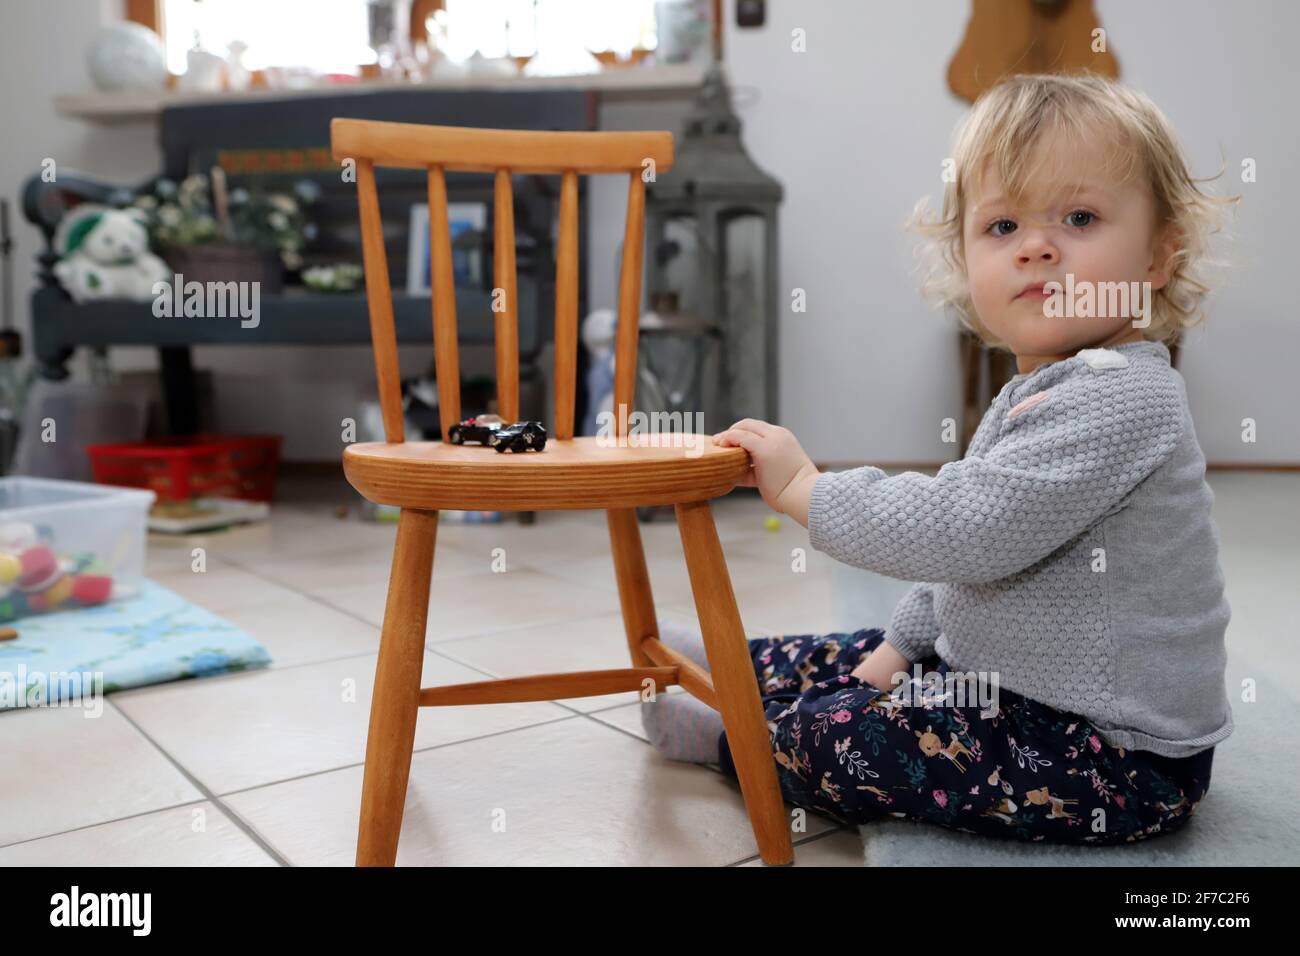 kleines Mädchen sitzt im Wohnzimmer auf dem Boden neben einem Kinderstuhl aus Holz - la bambina si siede sul pavimento accanto a sedia per bambini in legno in livi Foto Stock